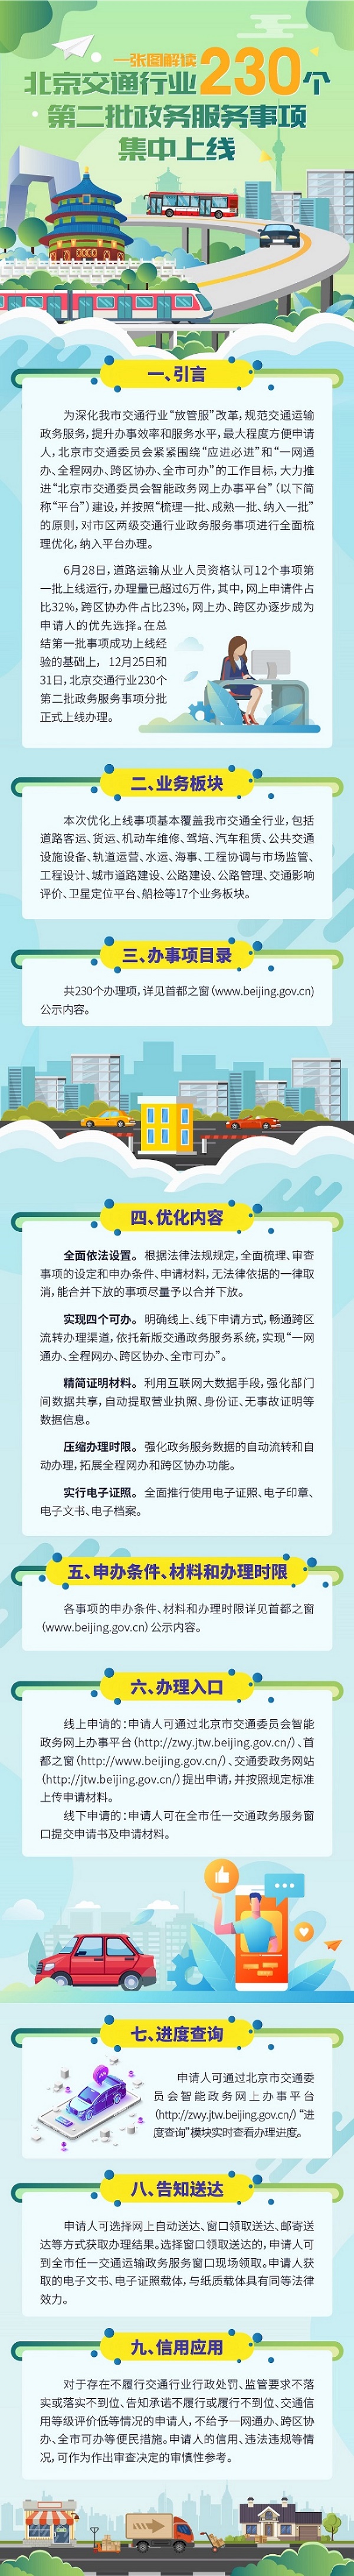 12月底前北京交通行业230个政务服务事项将集中上线运行